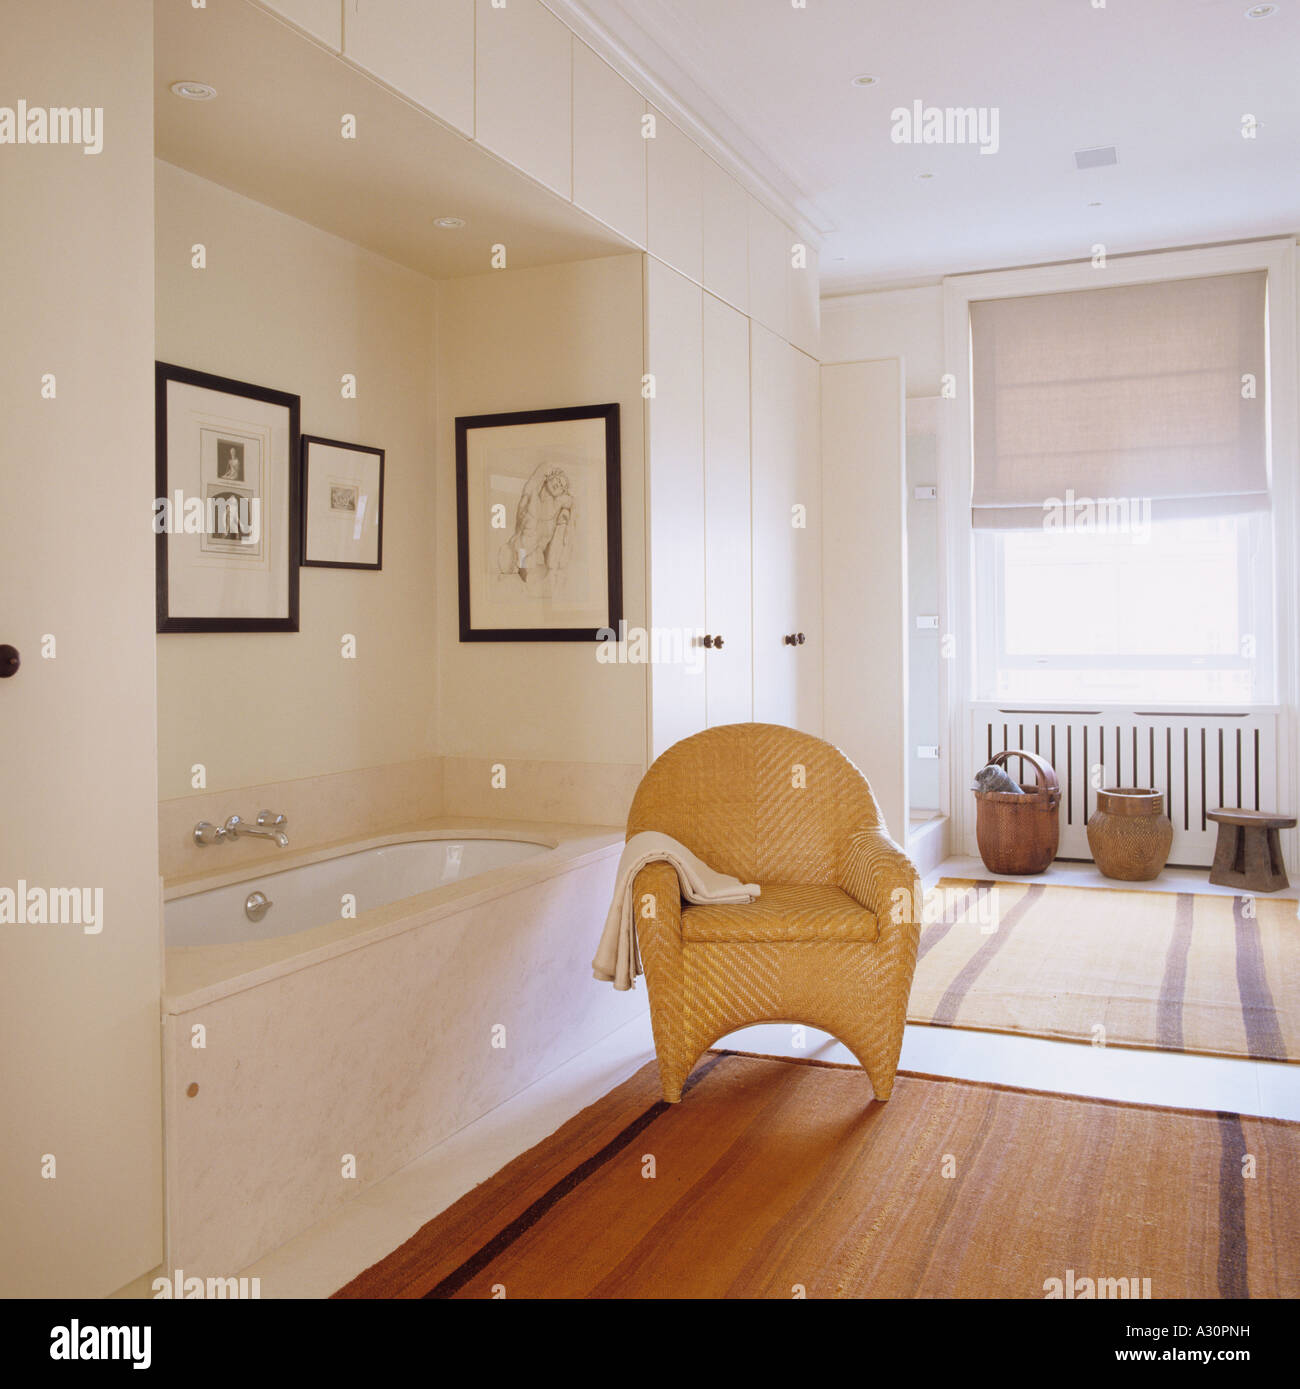 Silla de mimbre en el cuarto de baño con bañera empotrada y alfombras rayadas Foto de stock